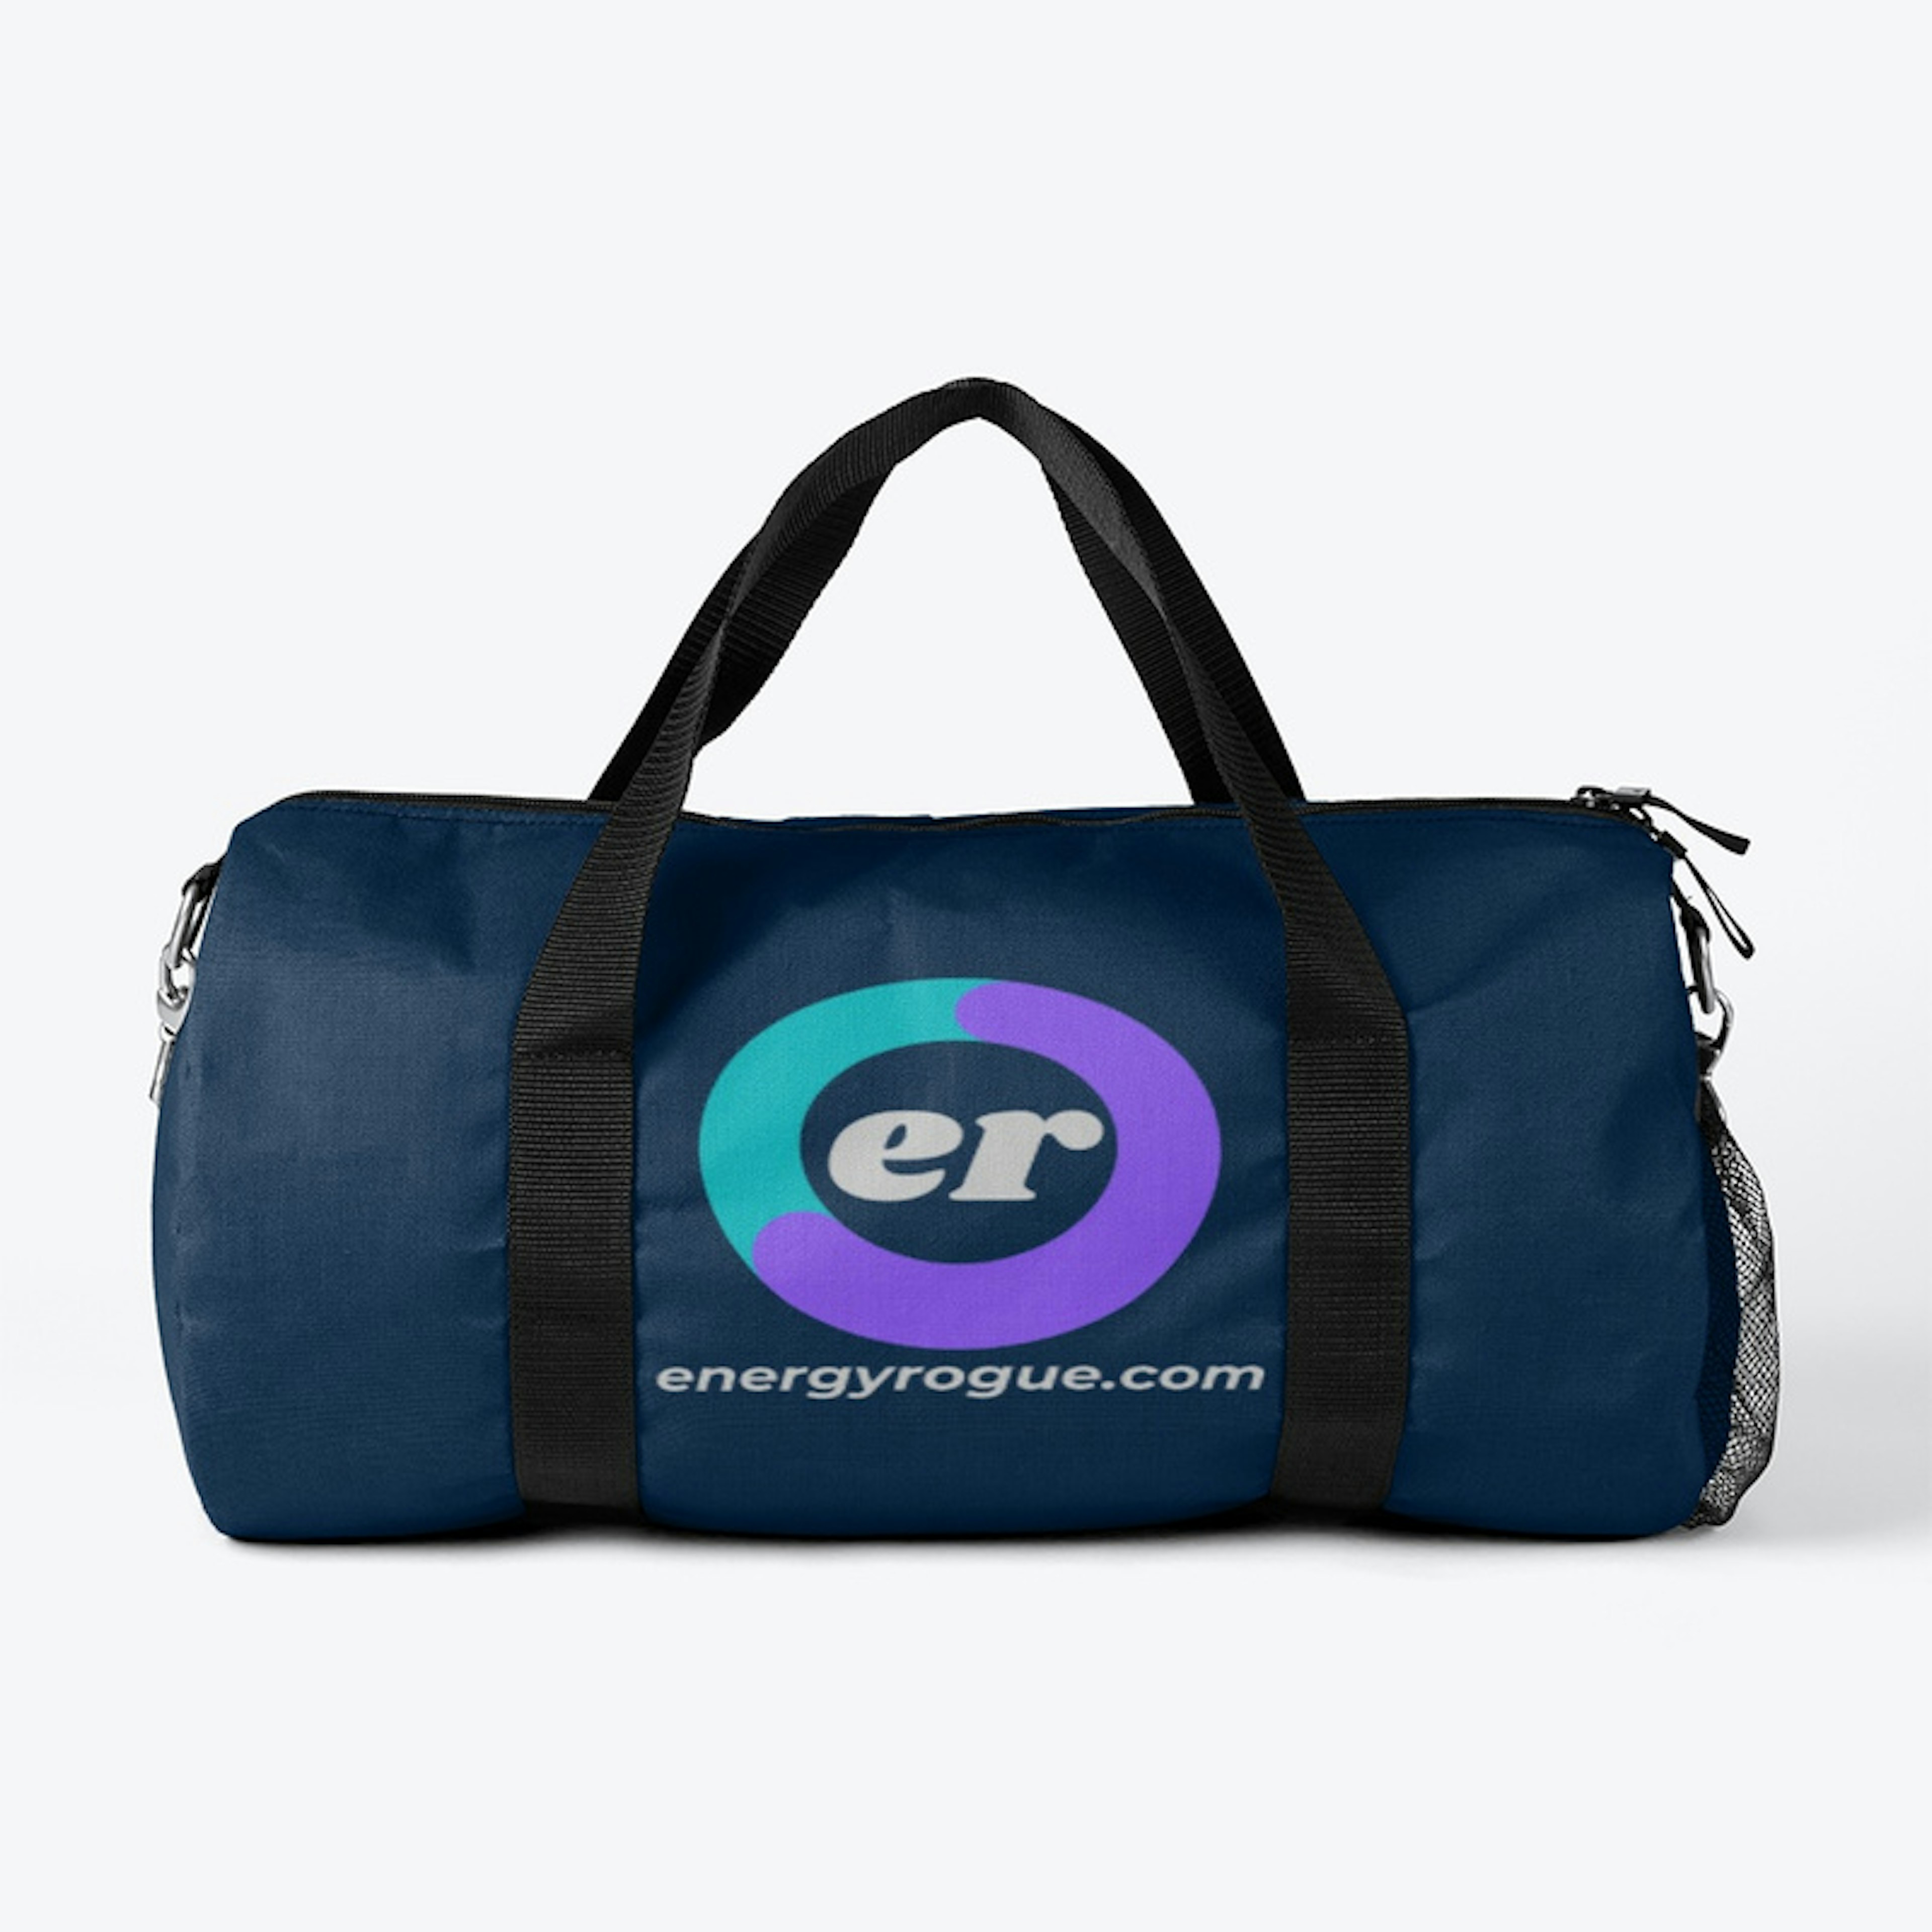 Get Your energyrogue.com gear